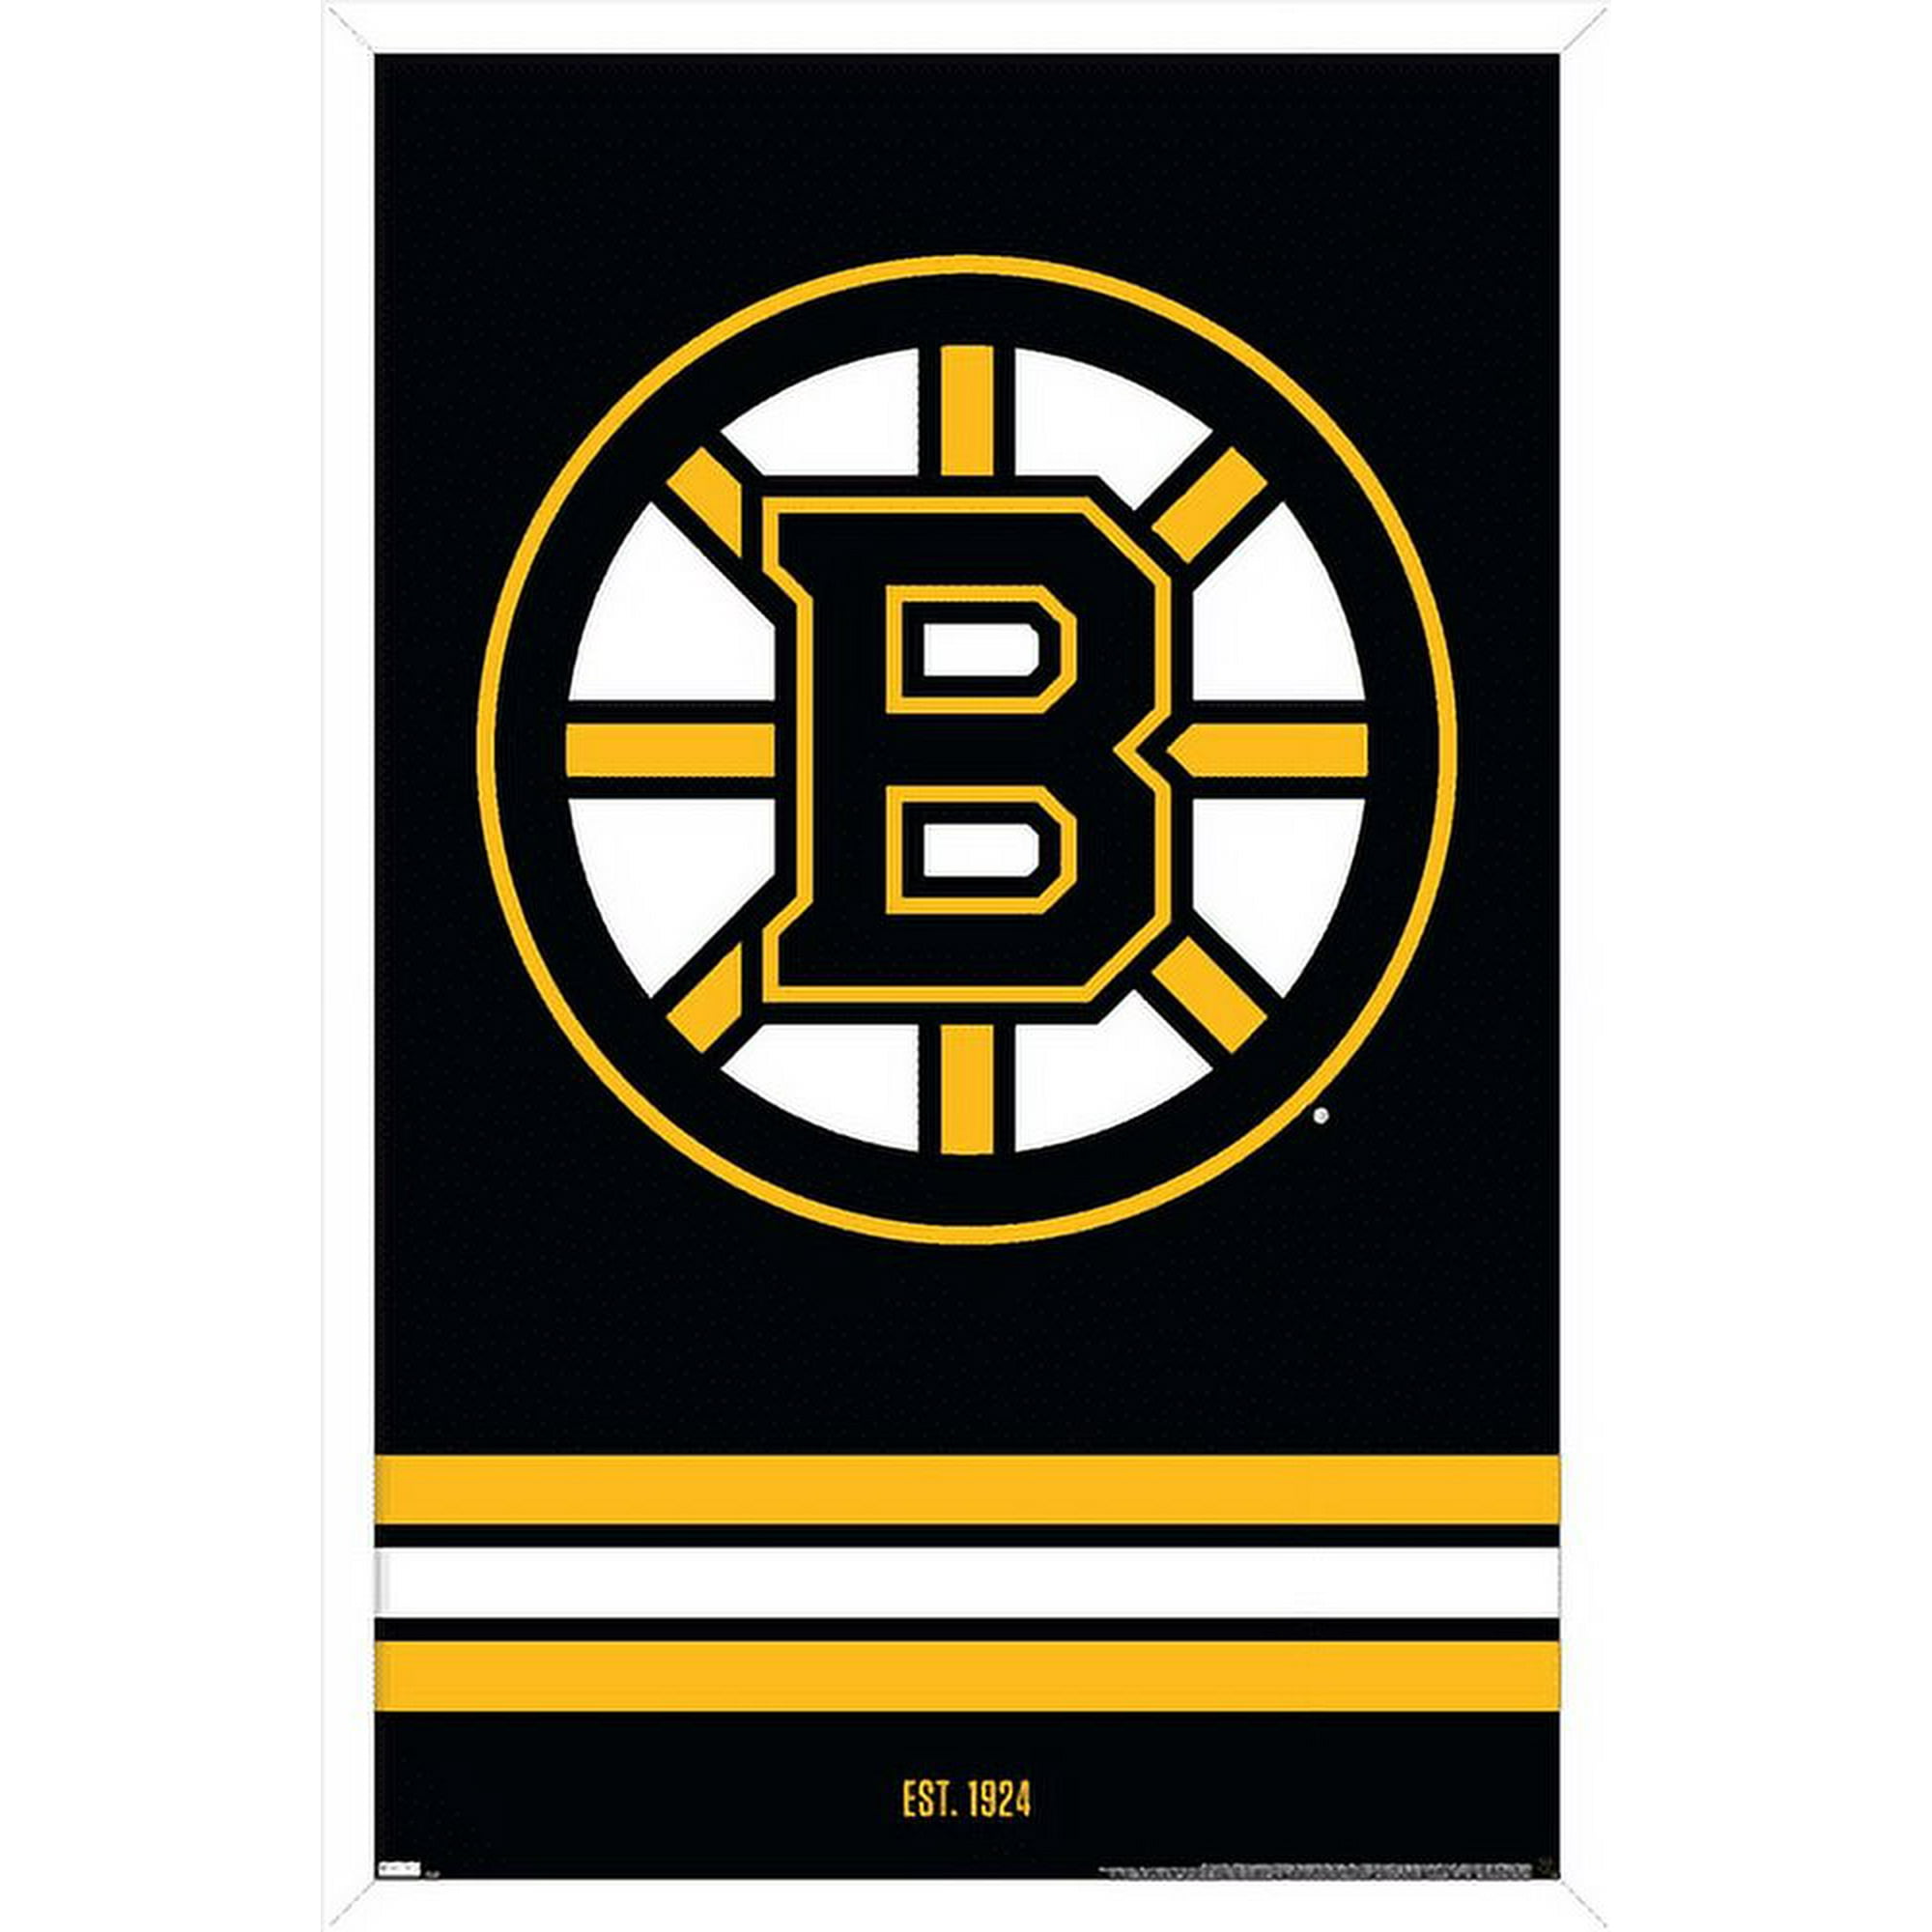  Sports Decor Boston Bruins Program Cover - Boston